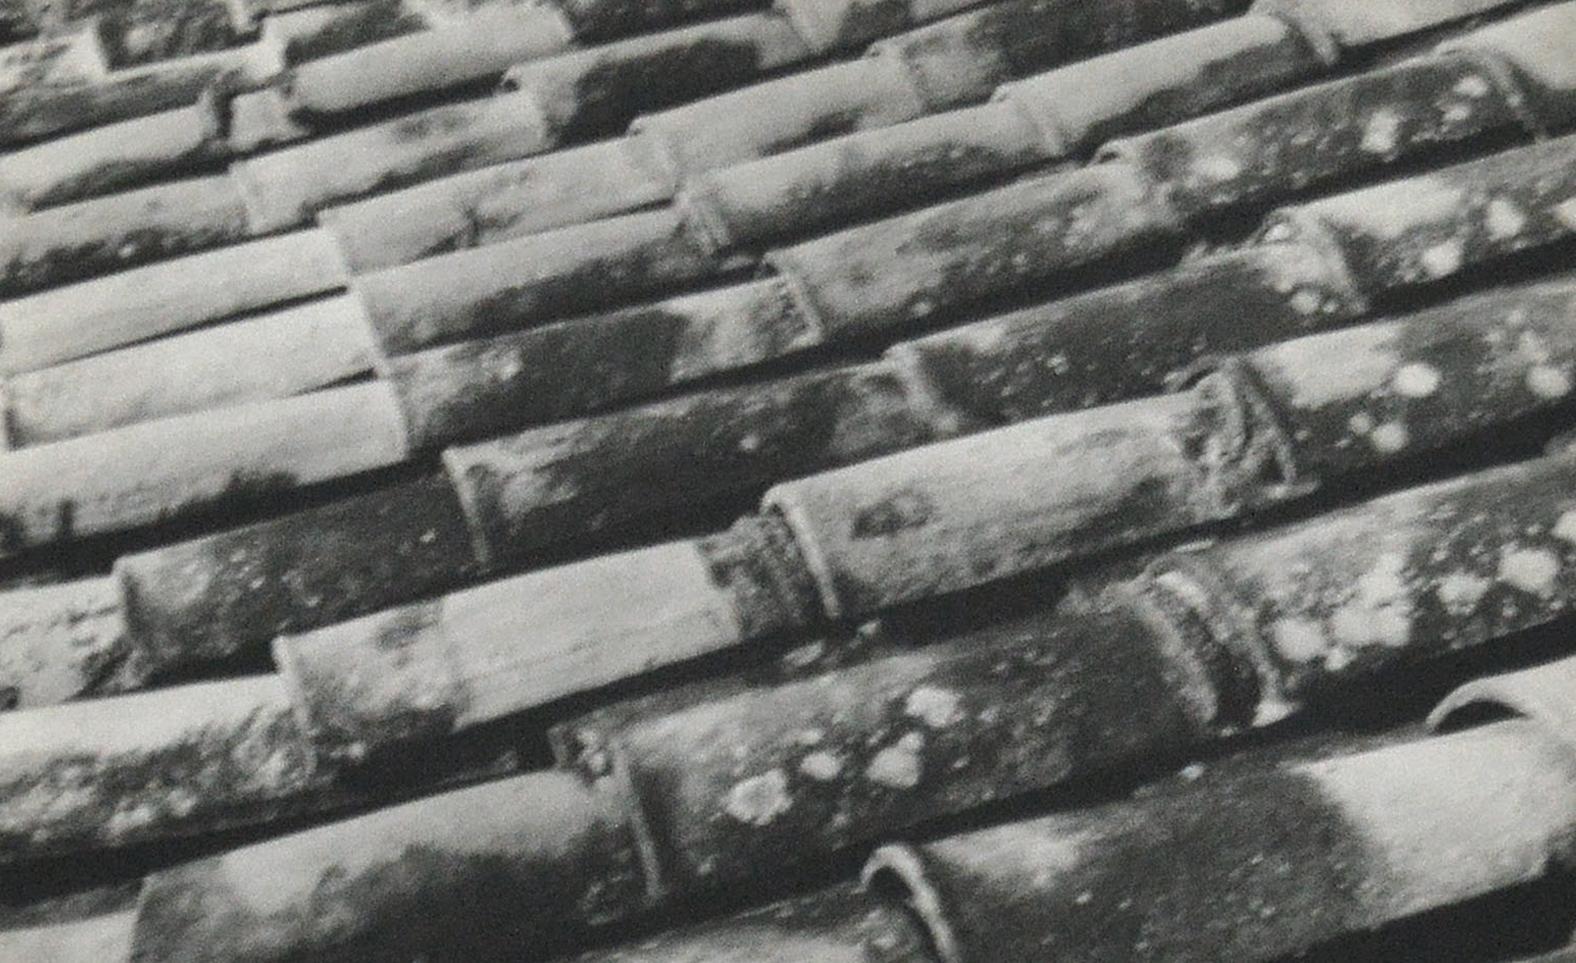 Techos, Mexiko, 1947 von Leo Matiz
Bildgröße: 6,5 Zoll. H x 9.75 in. W
Rahmengröße: 22 Zoll. H x 25 in. W
Gelatinesilberdruck
Gerahmt
Verso mit Bleistift signiert, betitelt und datiert: 